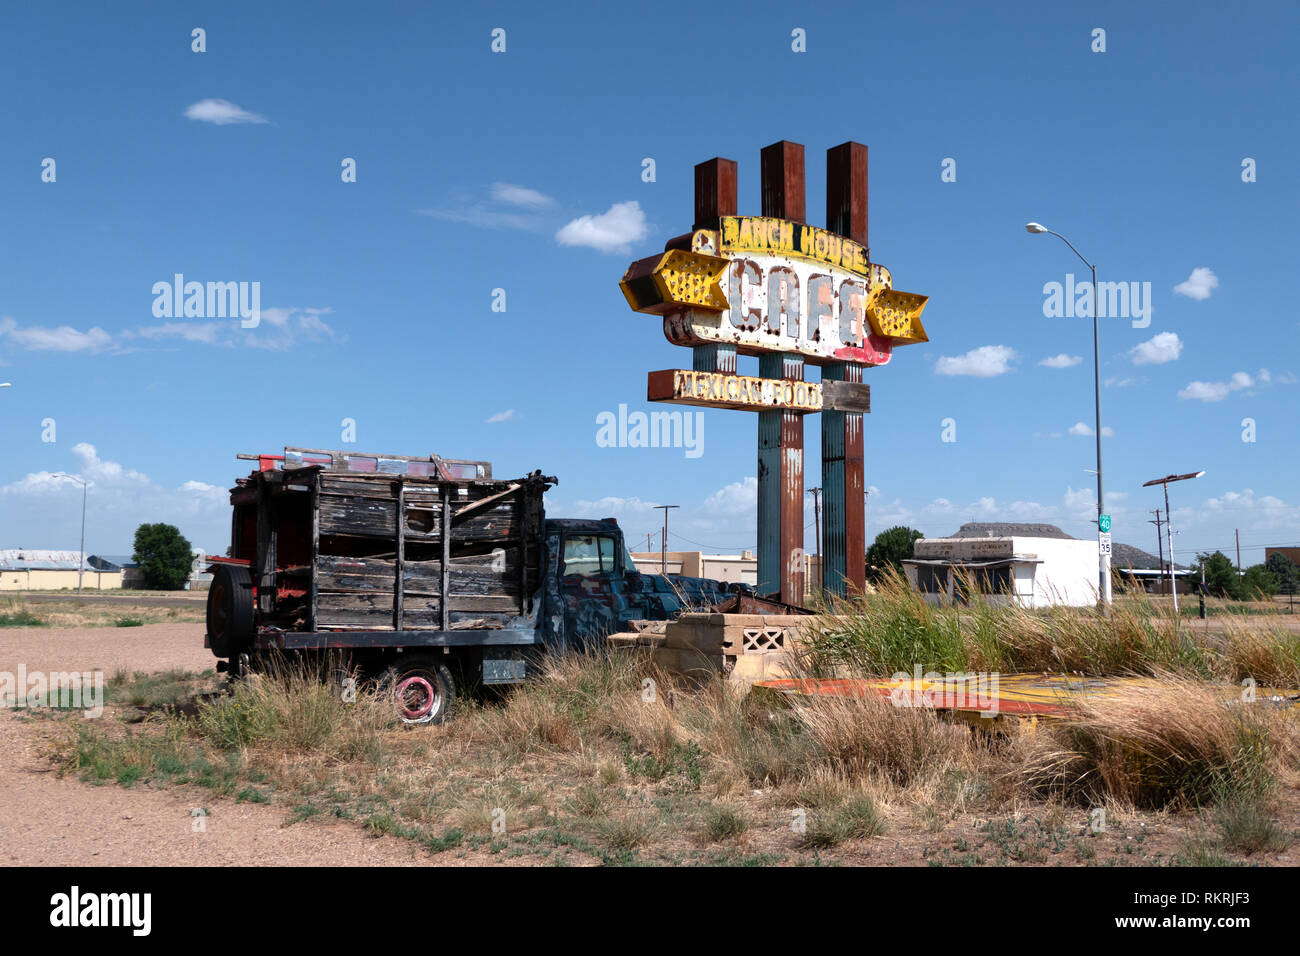 Abgebrochene cafeteria Restaurant in Santa Fe, New Mexico, Vereinigte Staaten von Amerika, entlang der legendären Route 66. Blick auf einer amerikanischen Kleinstadt in den Sou Stockfoto